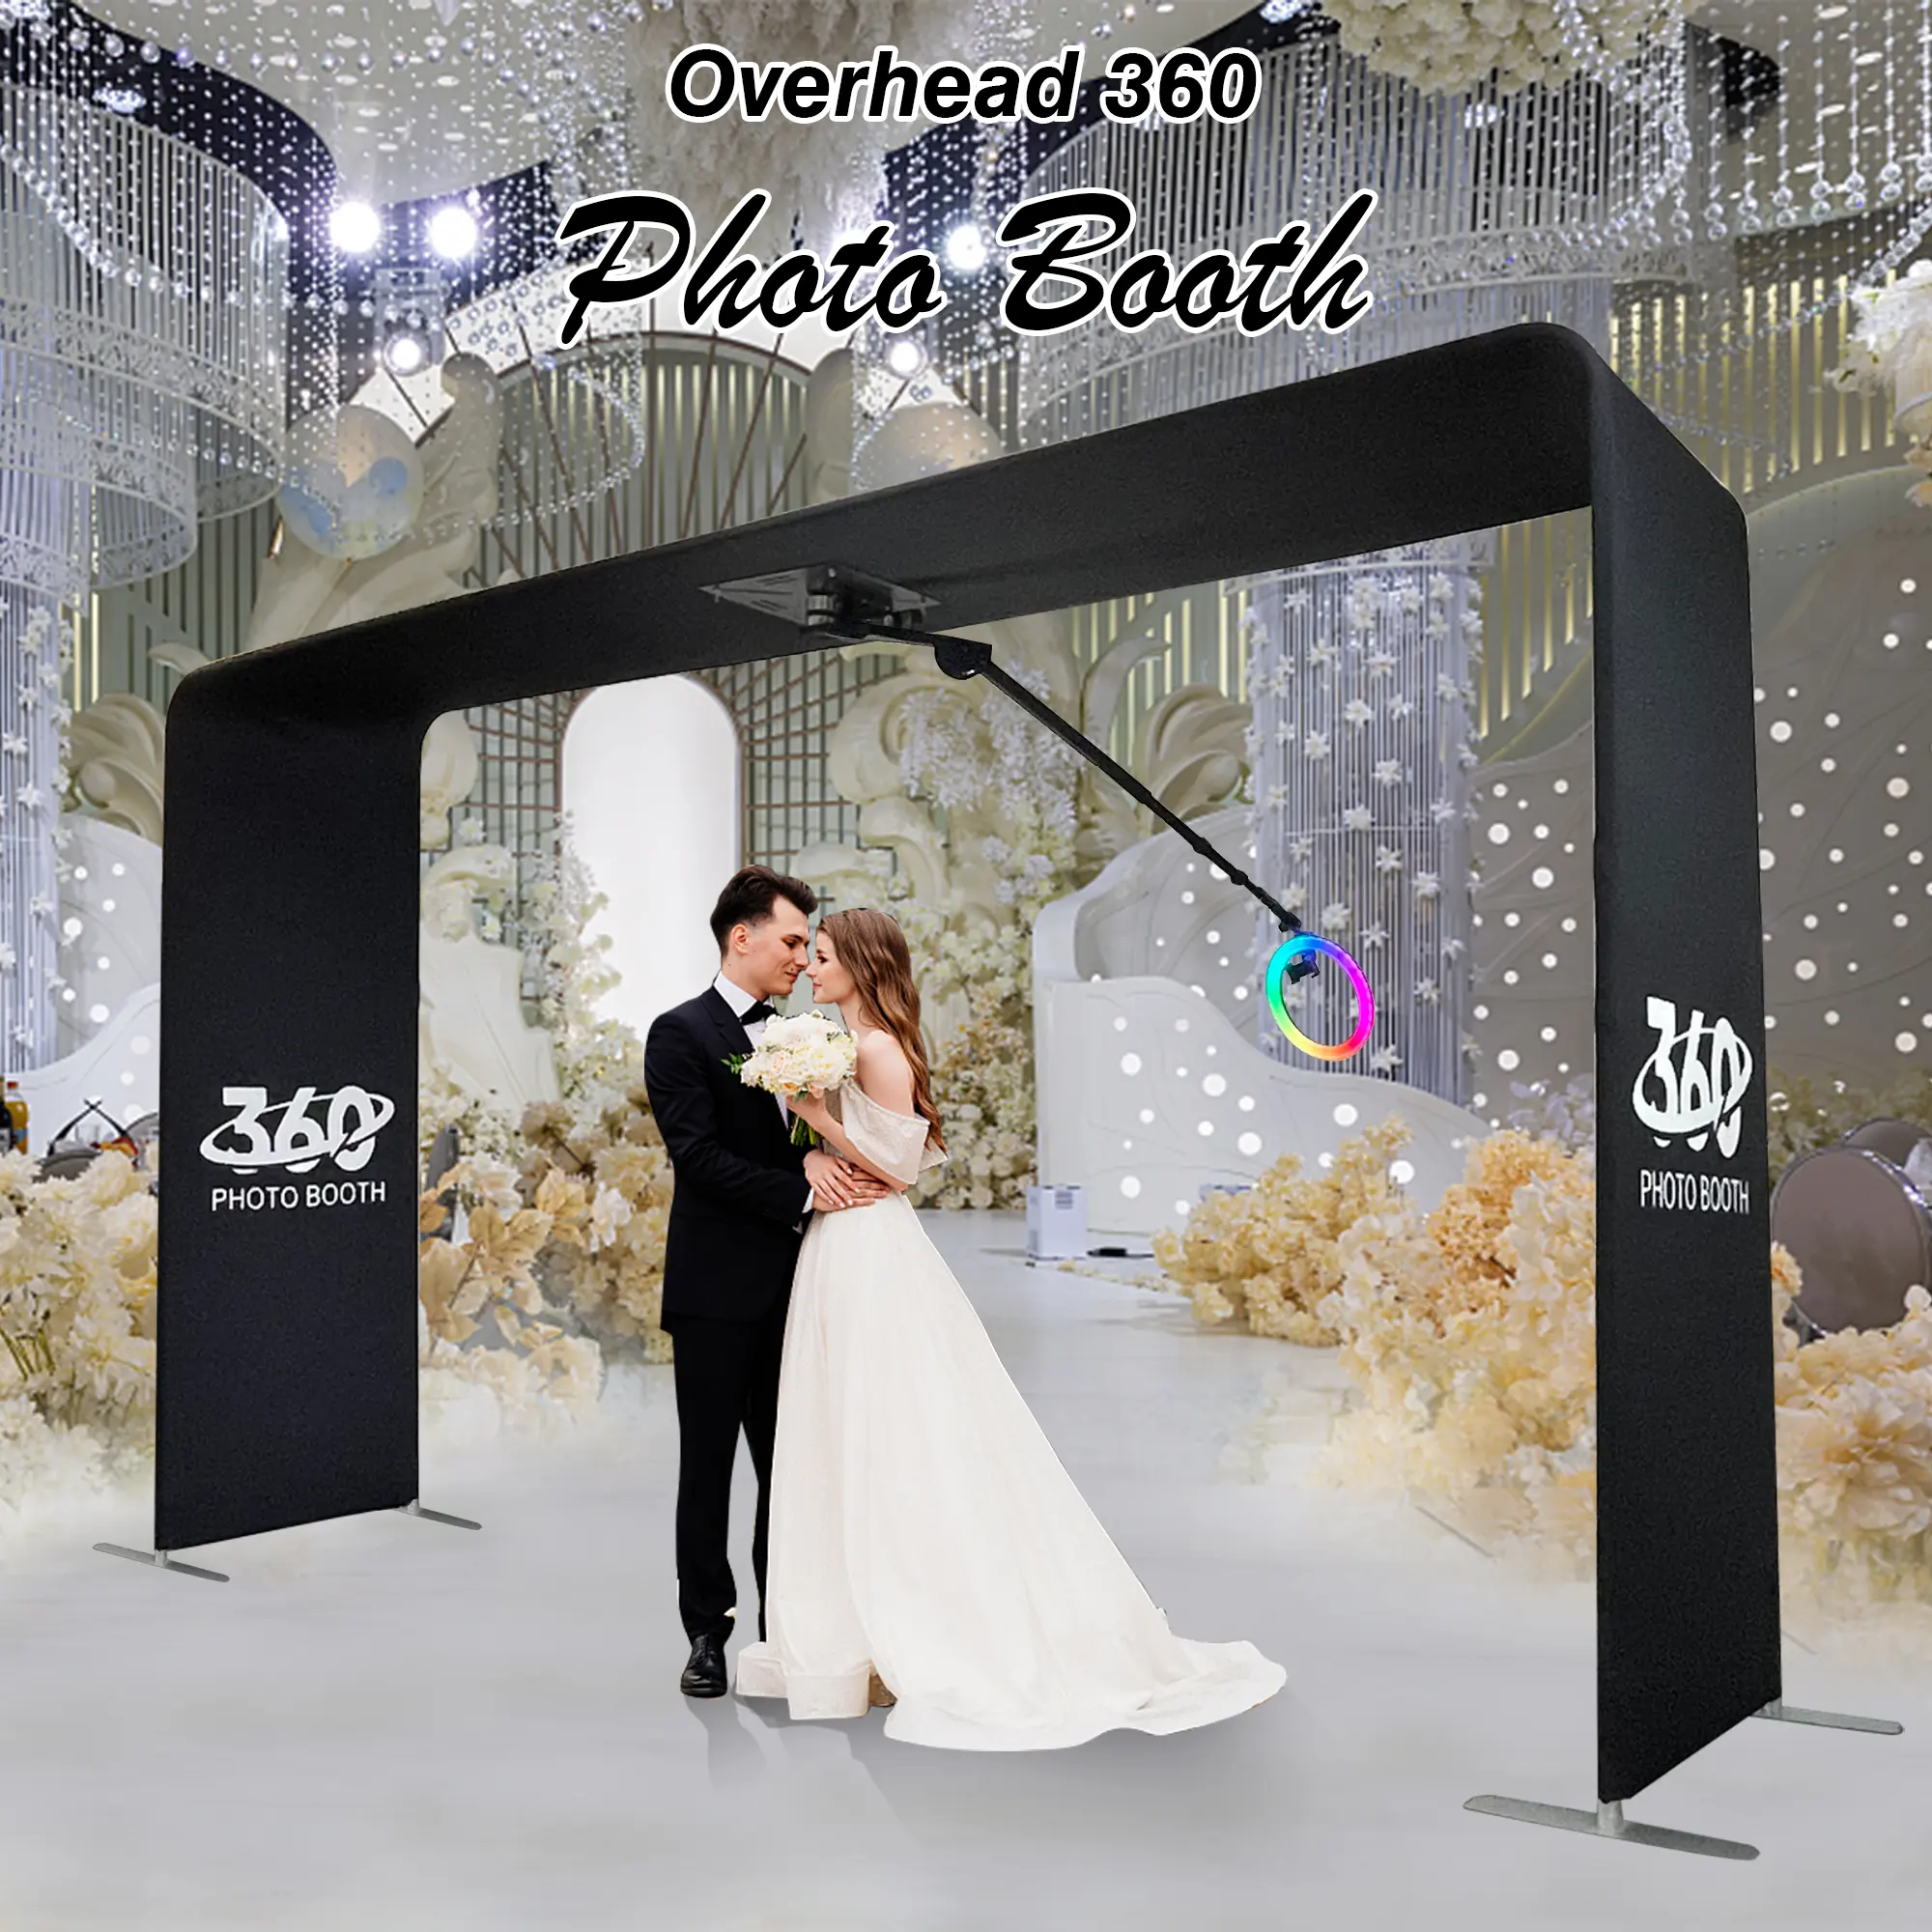 großhandel party spinner top 360 über kopf fotokabine photobooth über kopf 360 selfie fotokabine sky 360 fotokabine